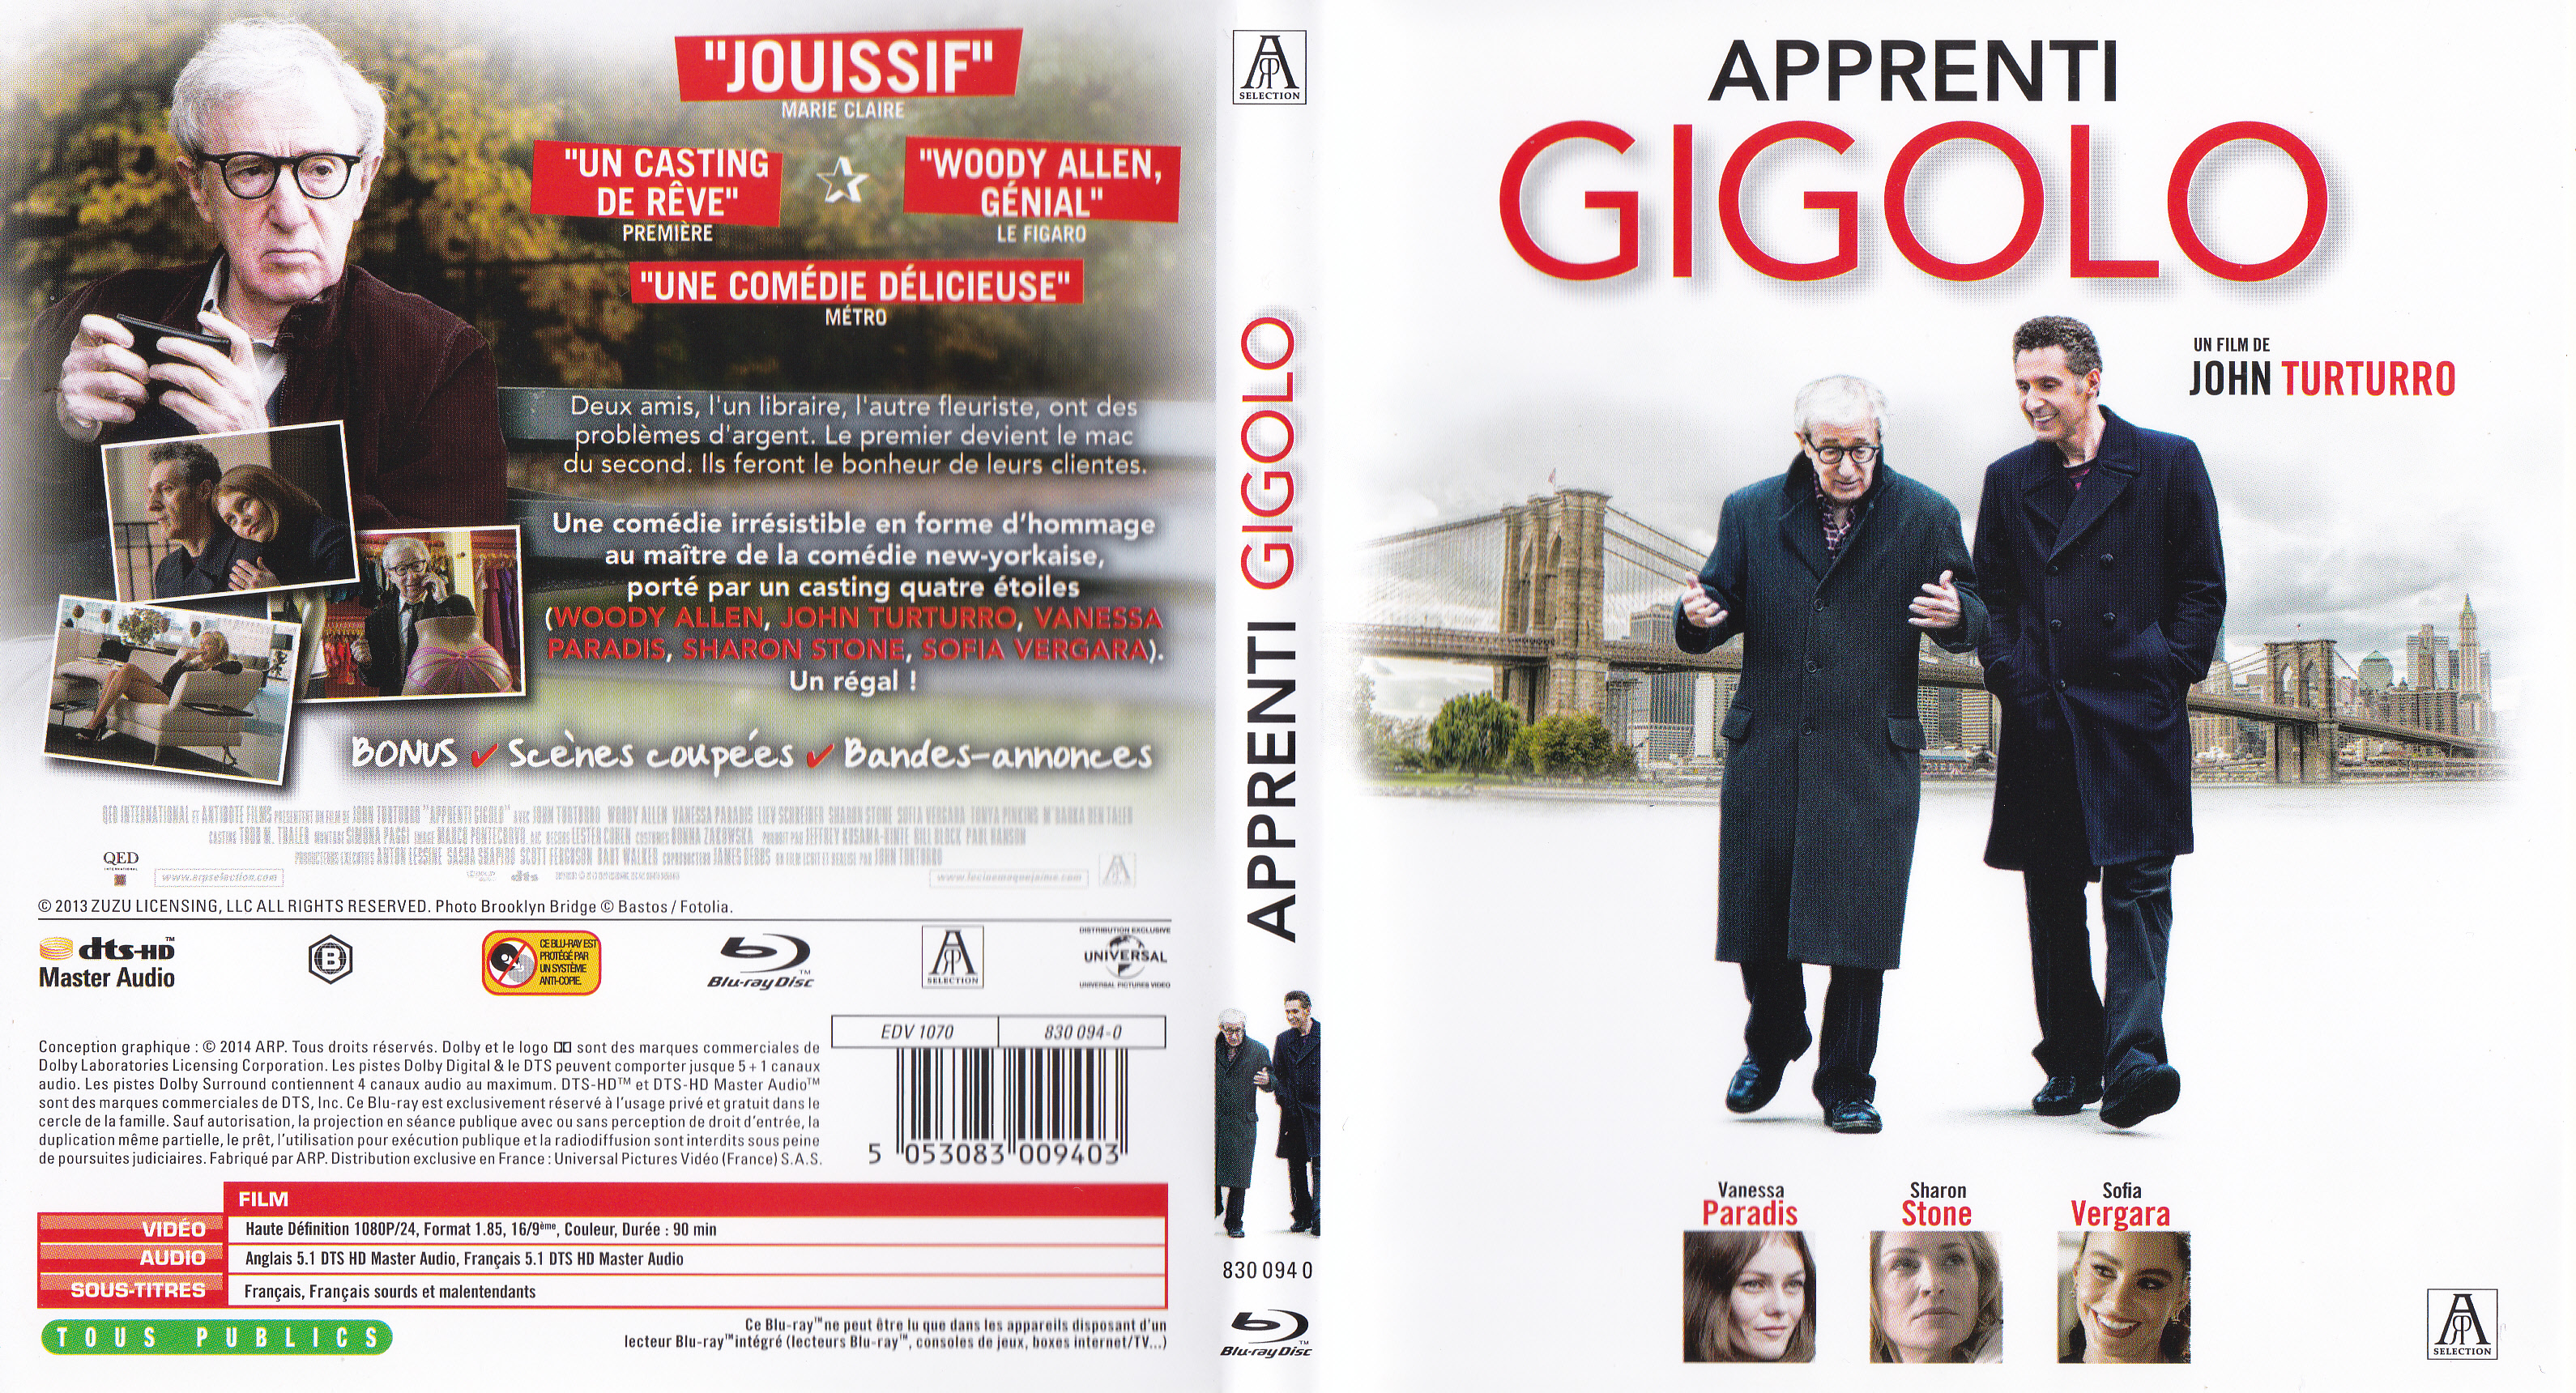 Jaquette DVD Apprenti Gigolo (BLU-RAY)